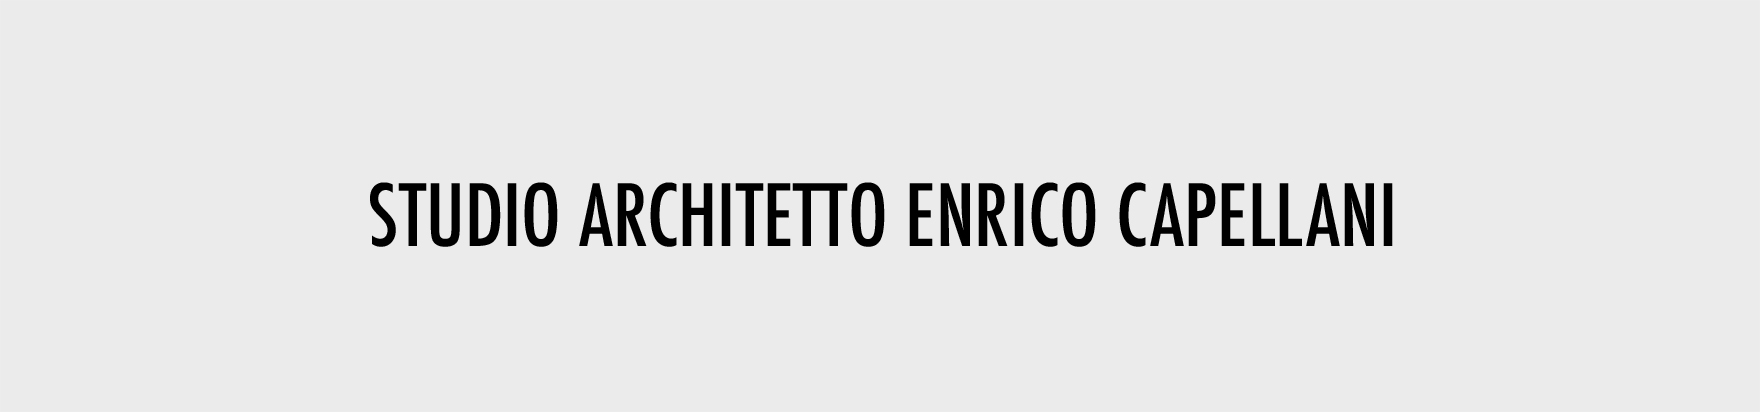 PROGETTI OK-ARCHITETTO ENRICO CAPELLANI